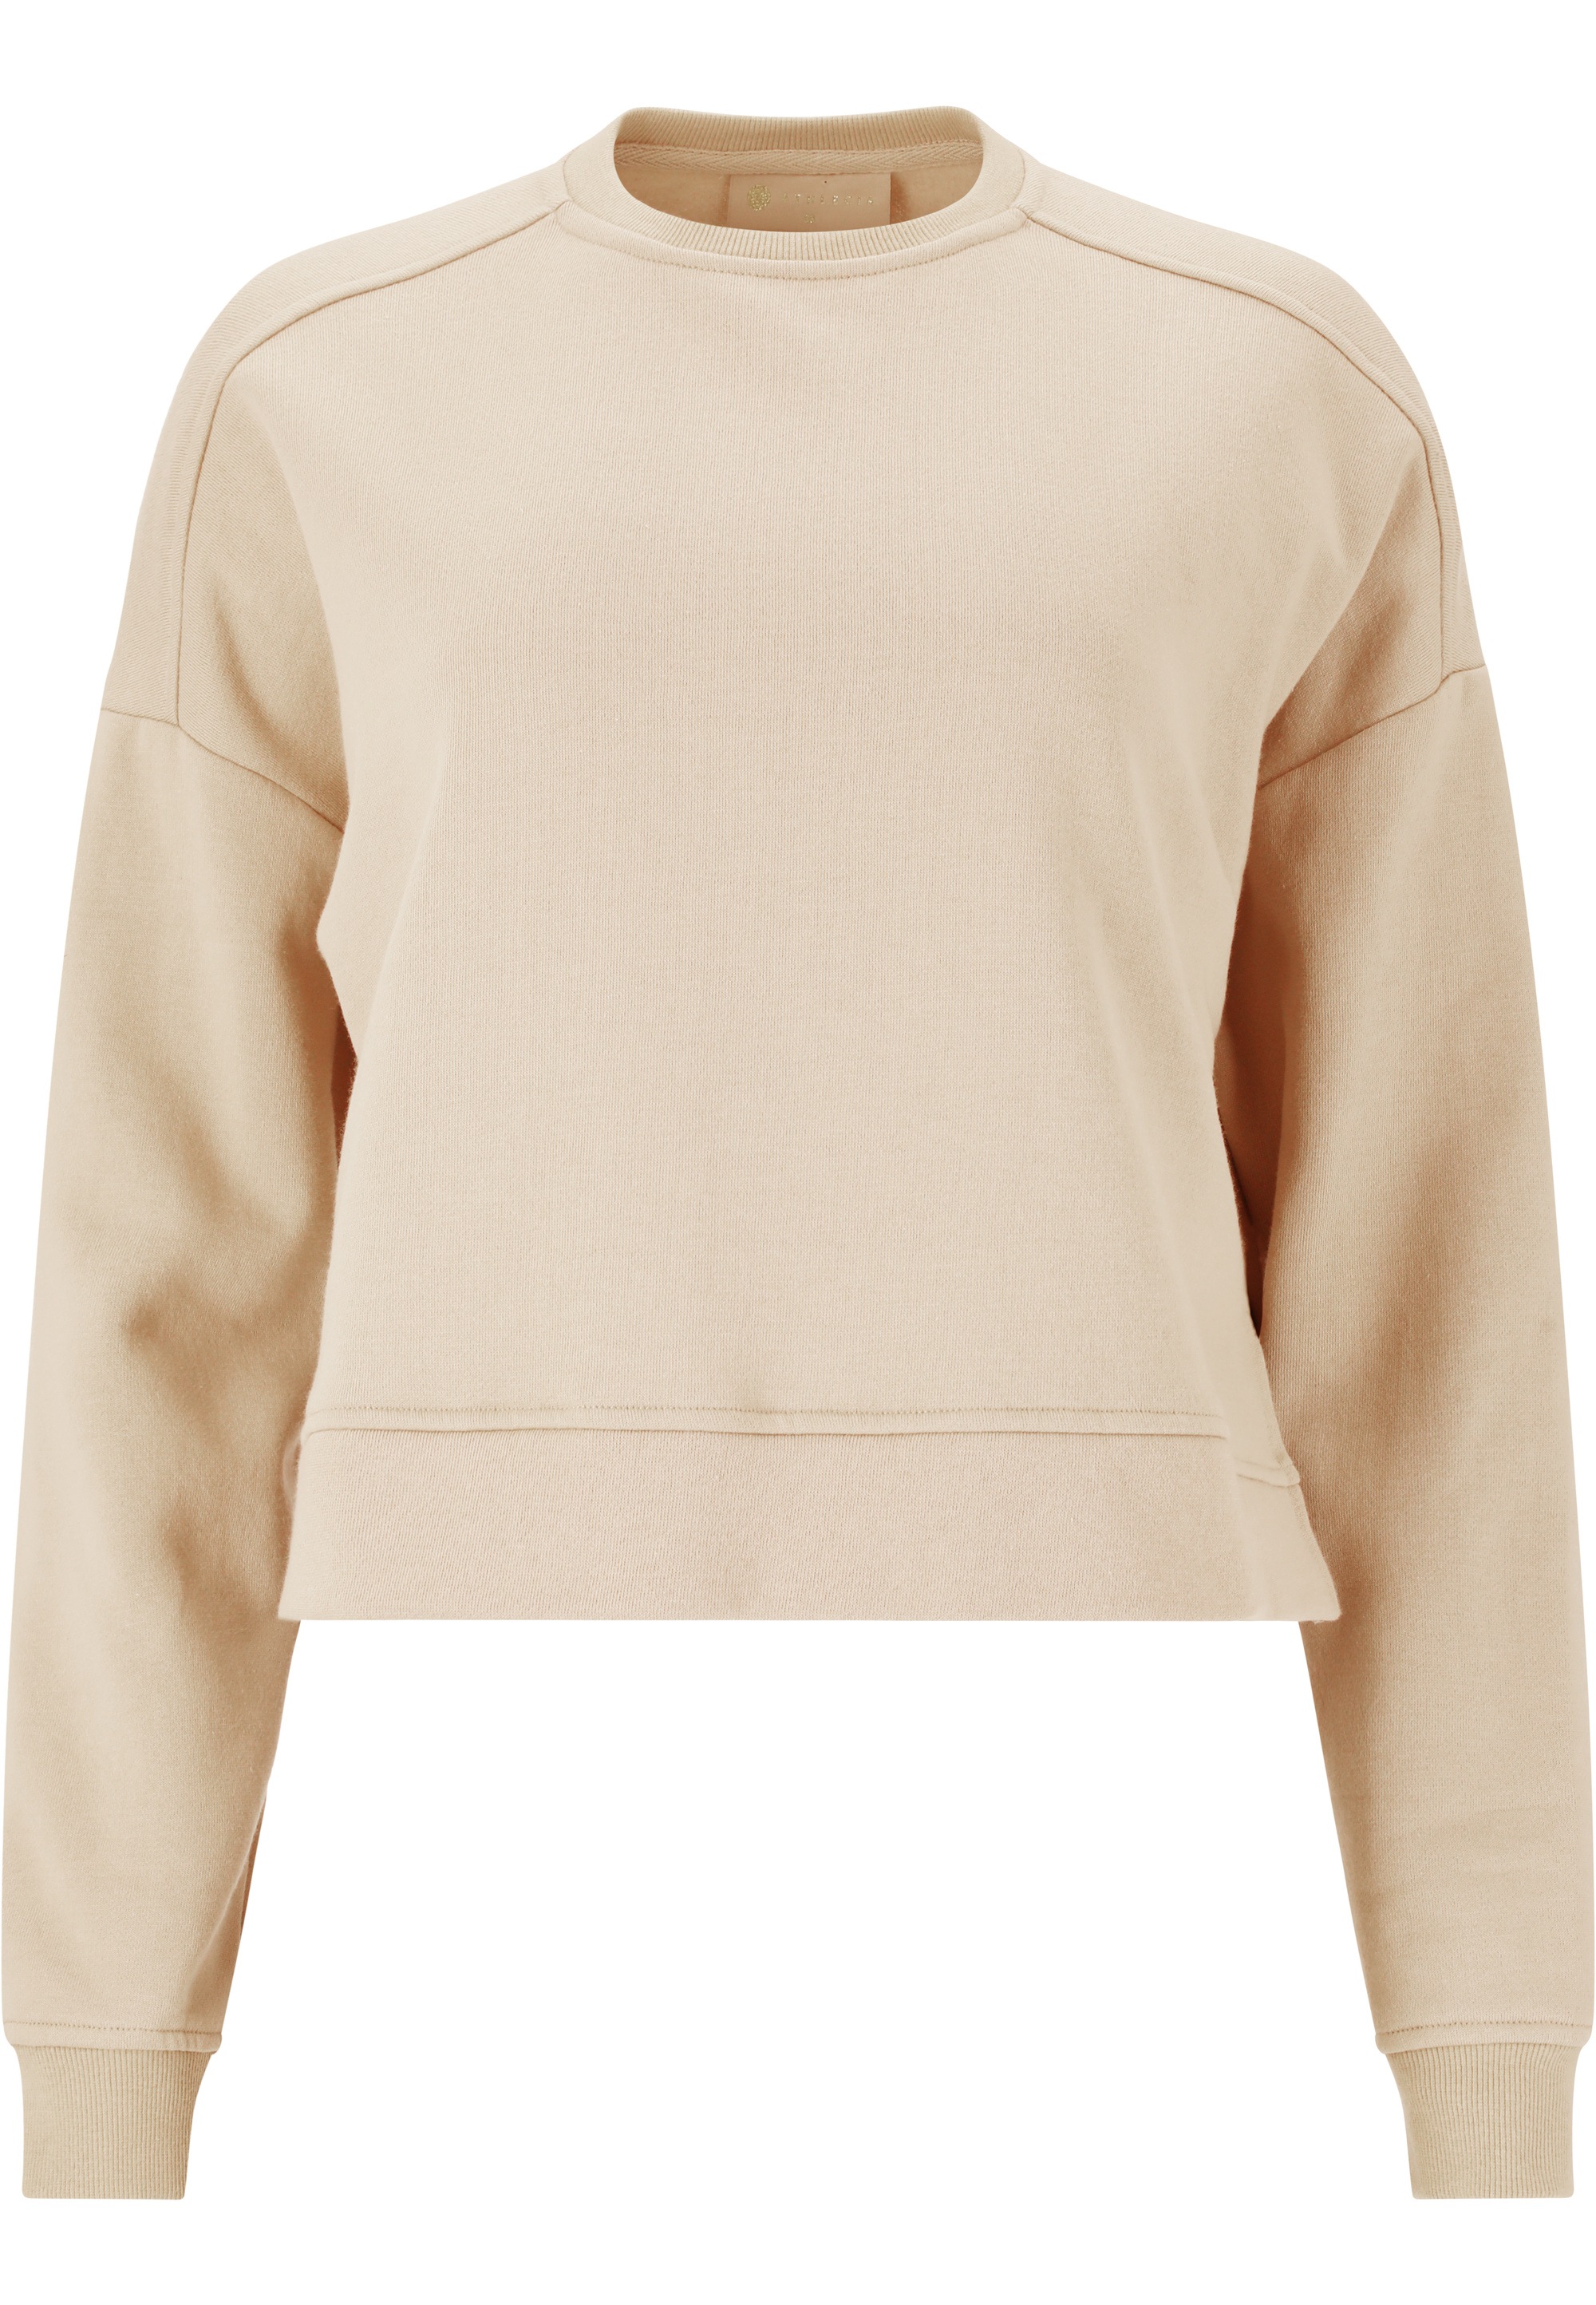 ATHLECIA Sweatshirt »Aya«, mit angenehm weichem Tragekomfort